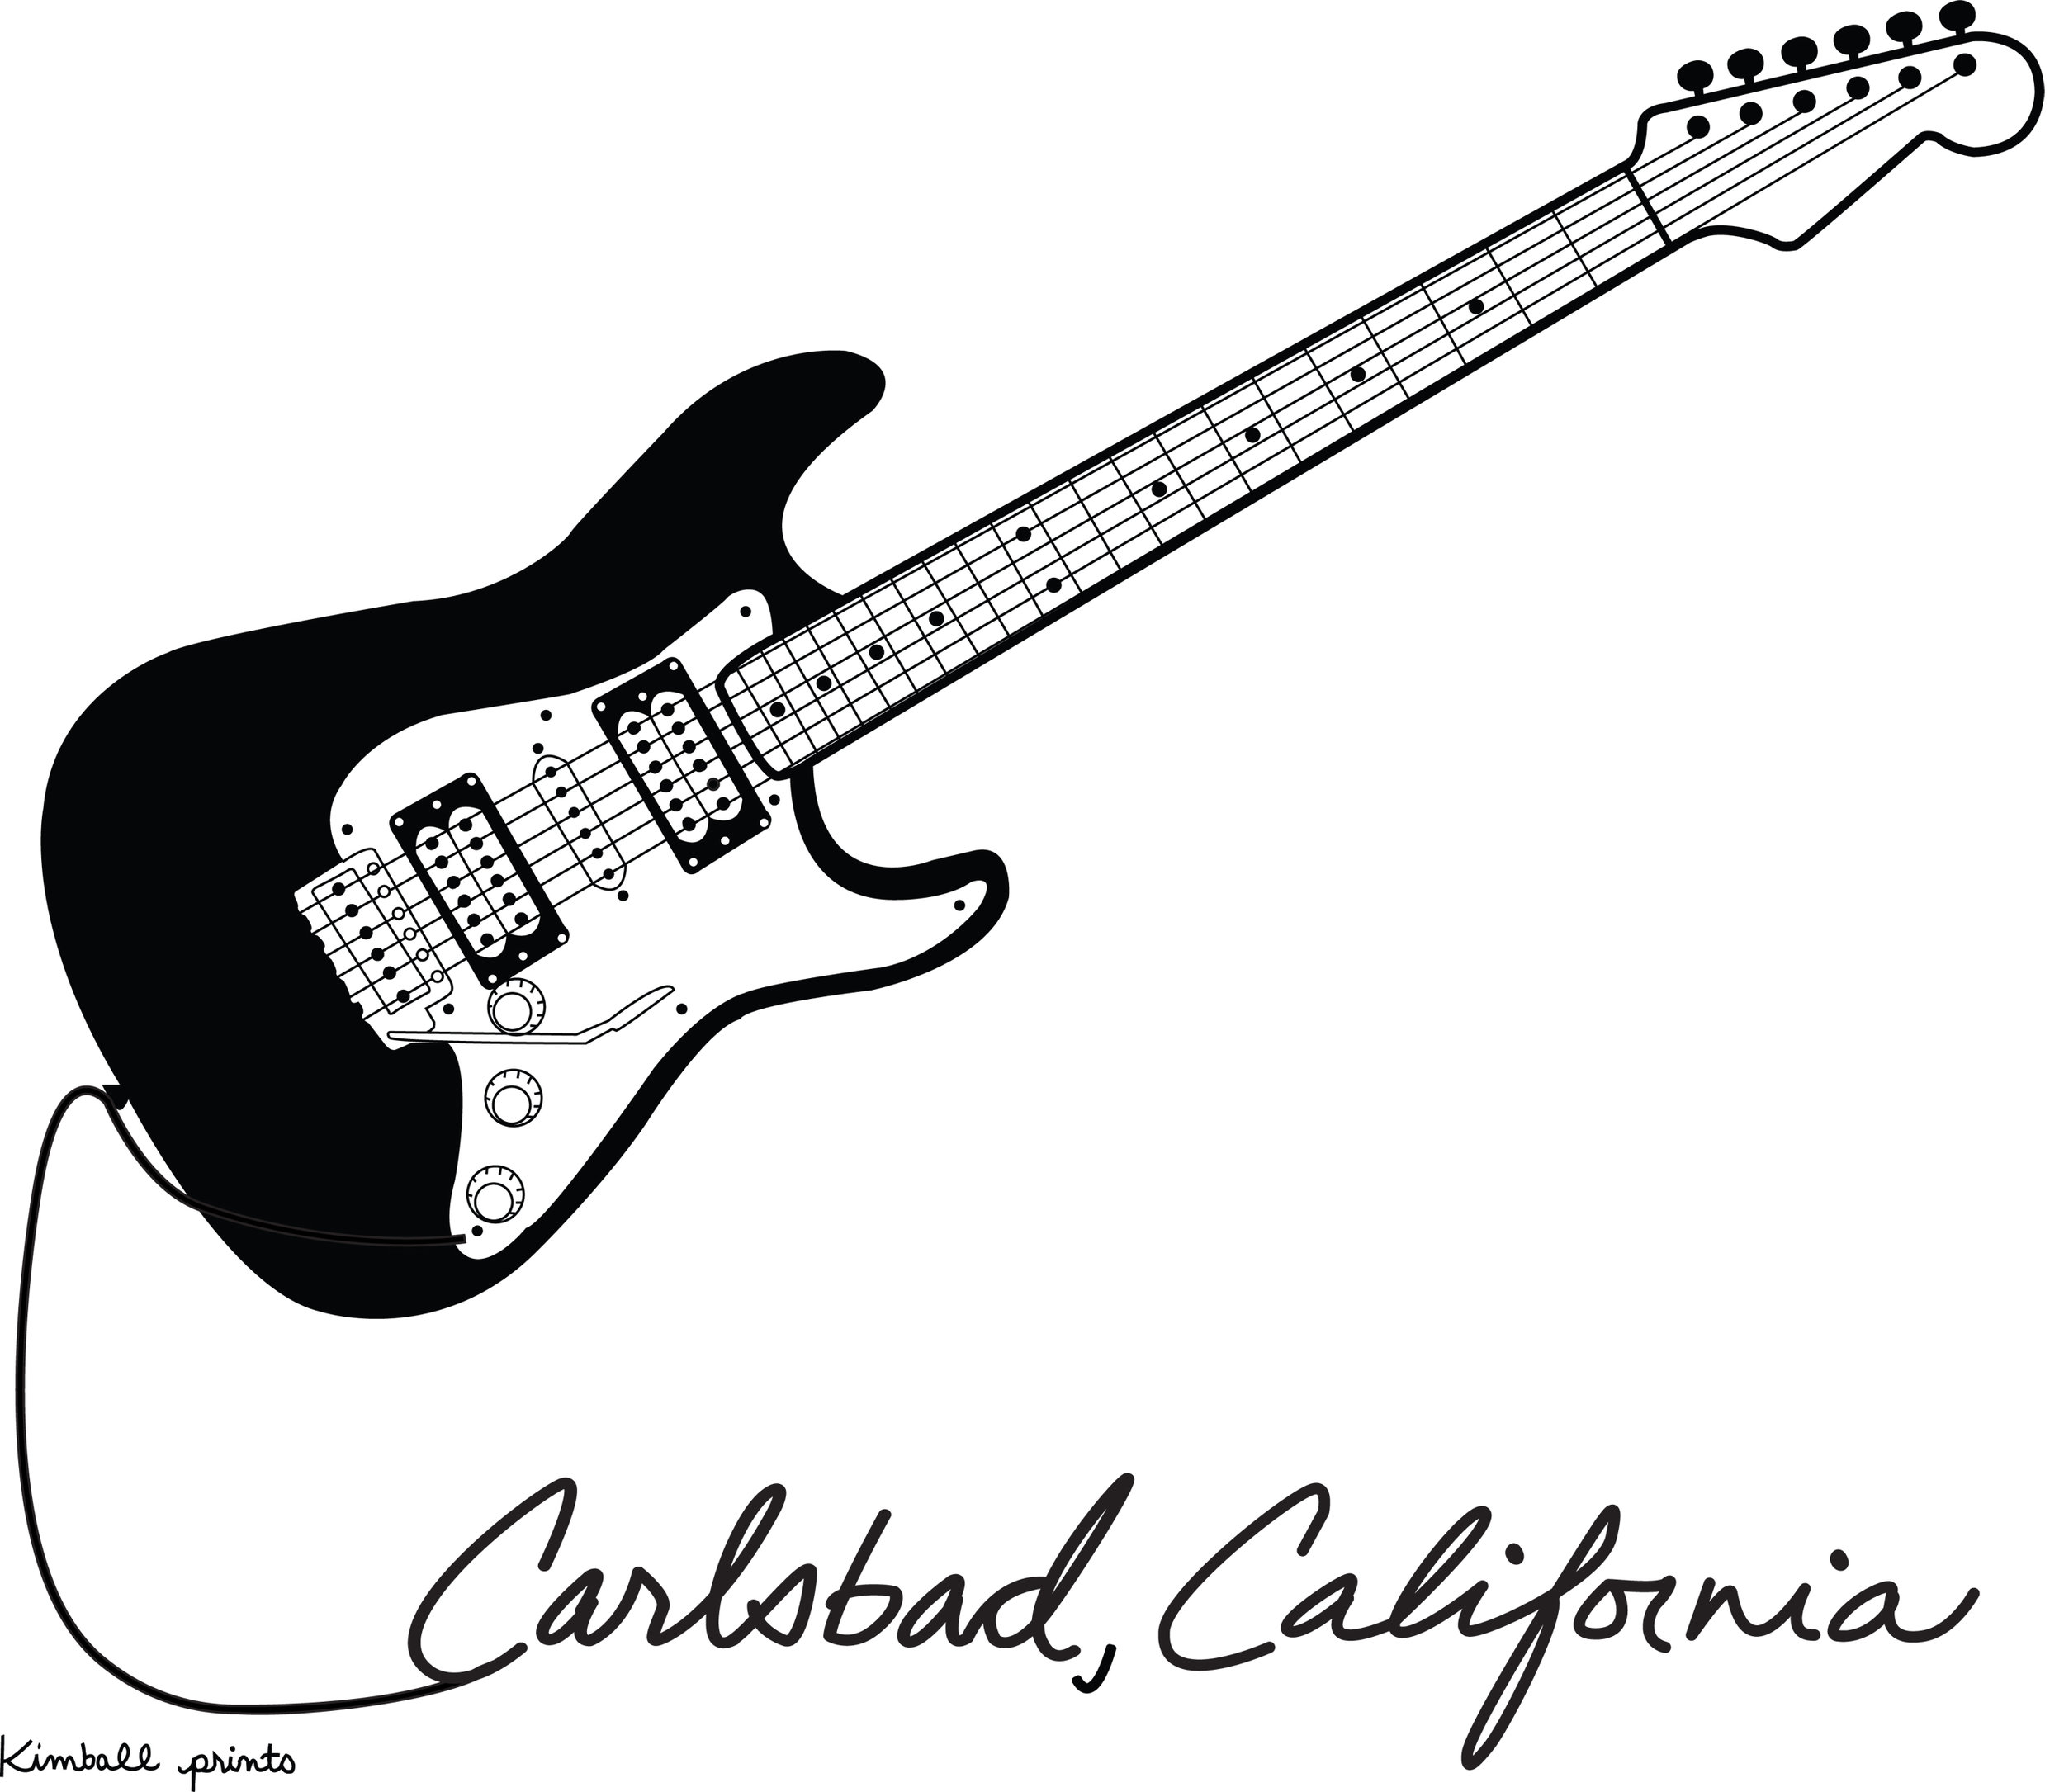 Guitar_CarlsbadCA.jpg